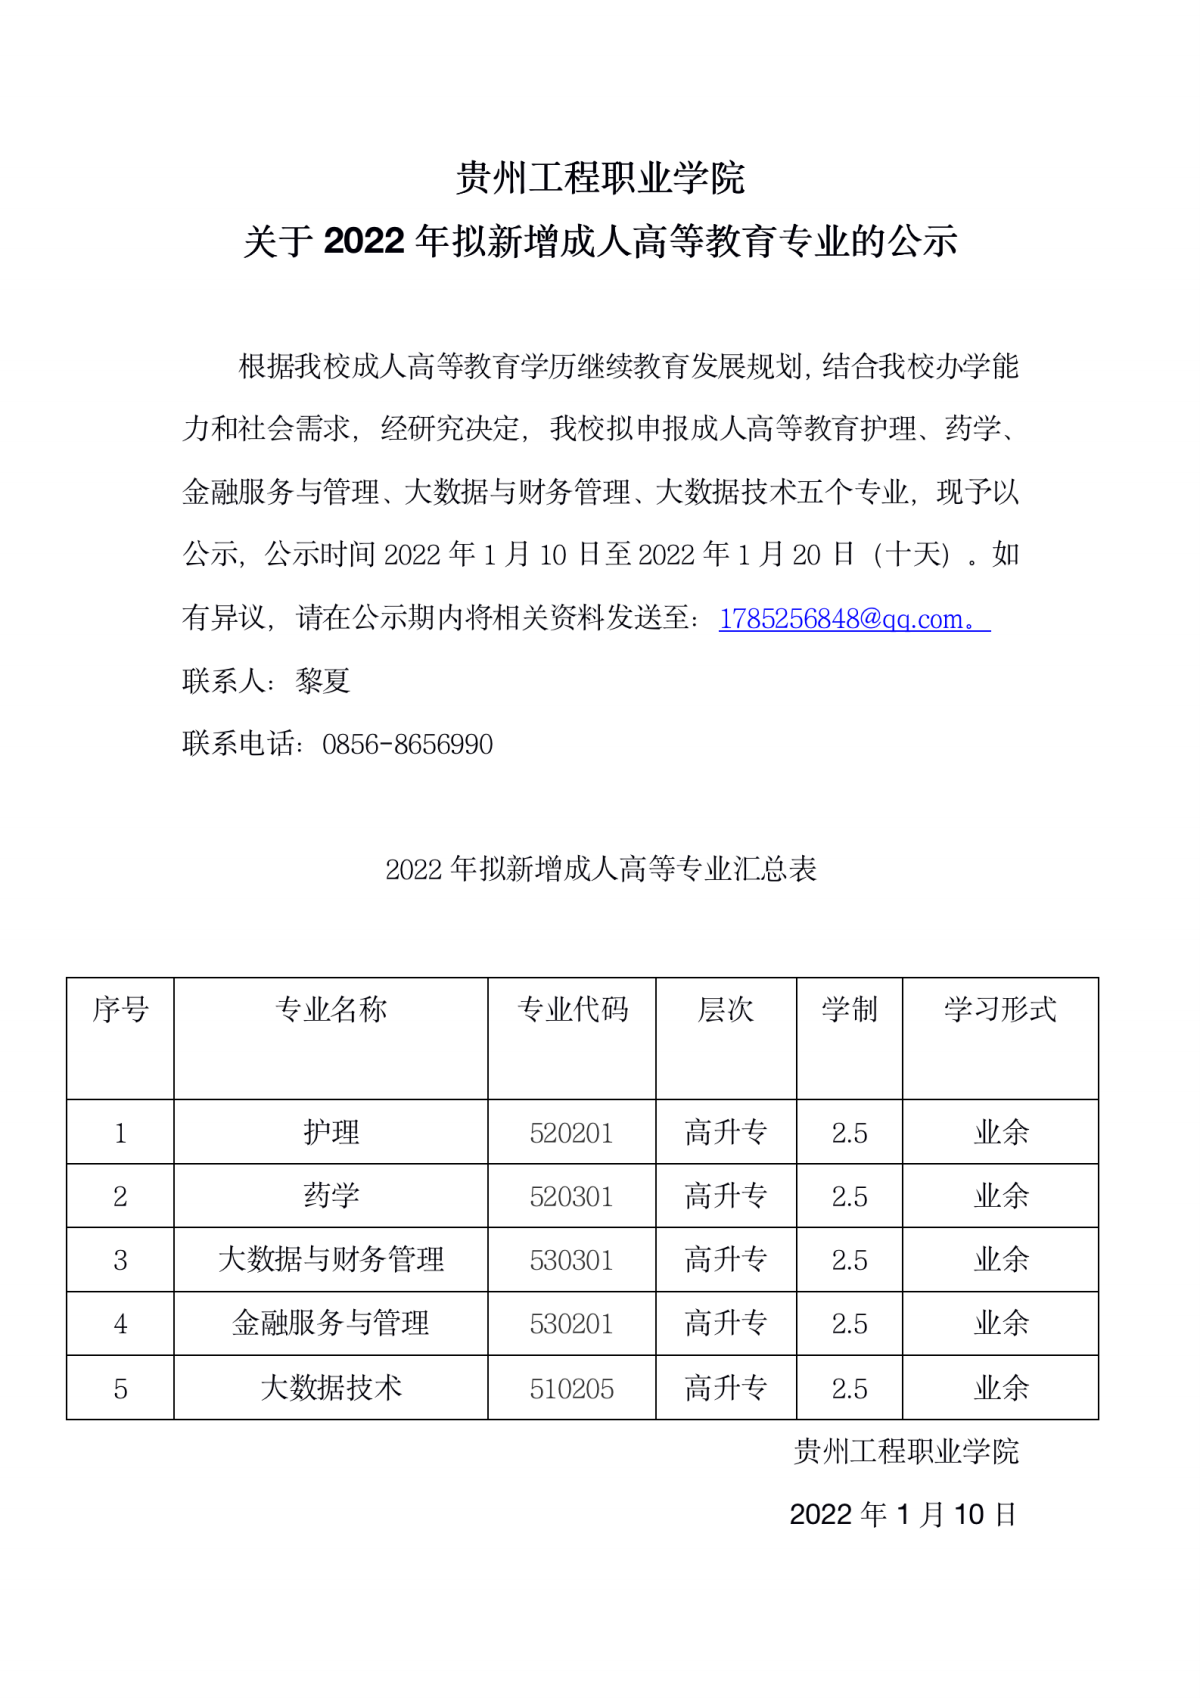 九州电竞(中国)九州有限公司关于2022年拟新增成人高等教育专业的公示(图1)